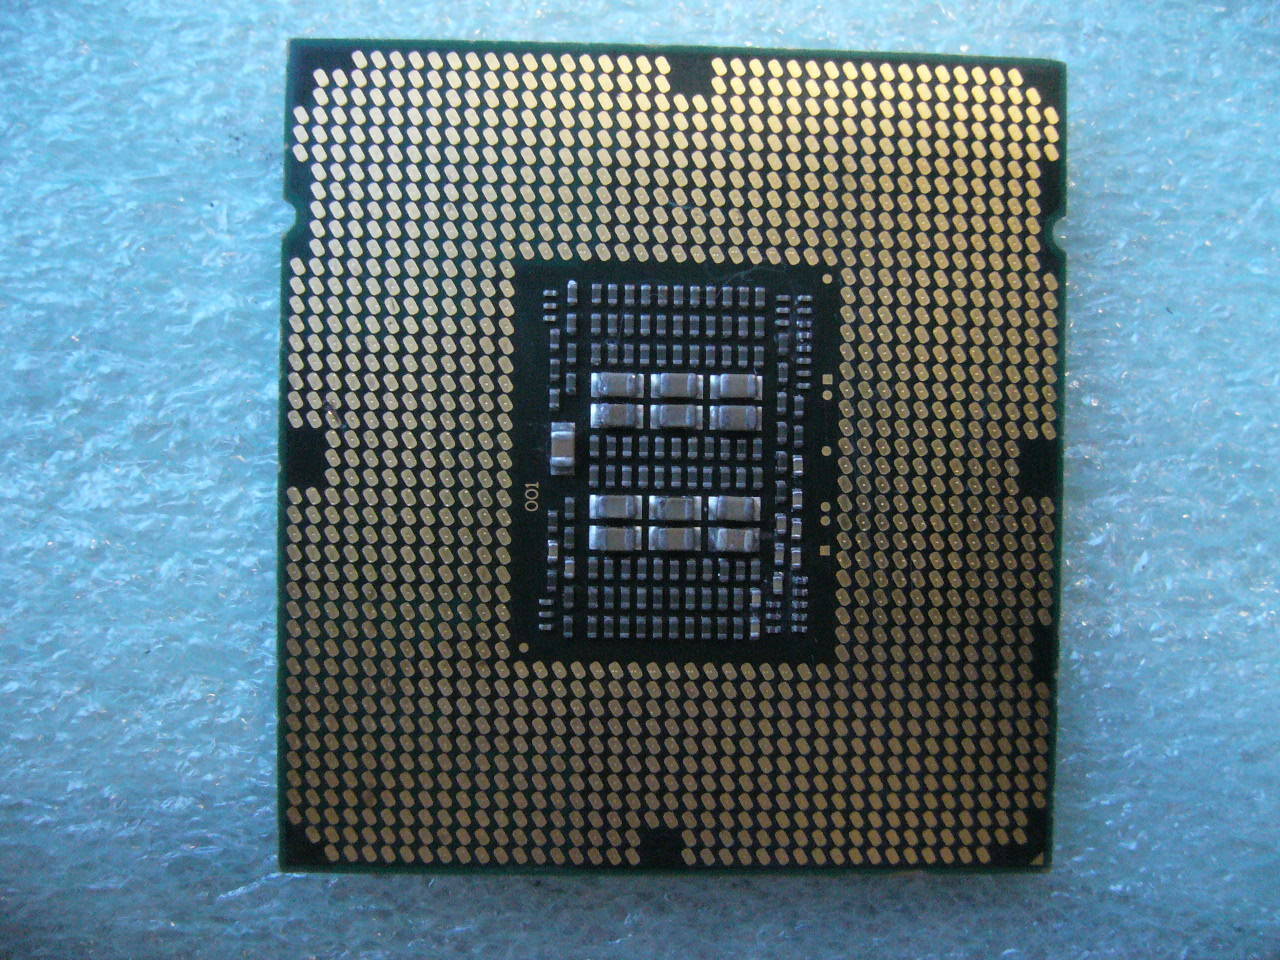 QTY 1x Intel CPU E5-2430 CPU 6-Cores 2.2GhzCache LGA1356 SR0LM - Click Image to Close